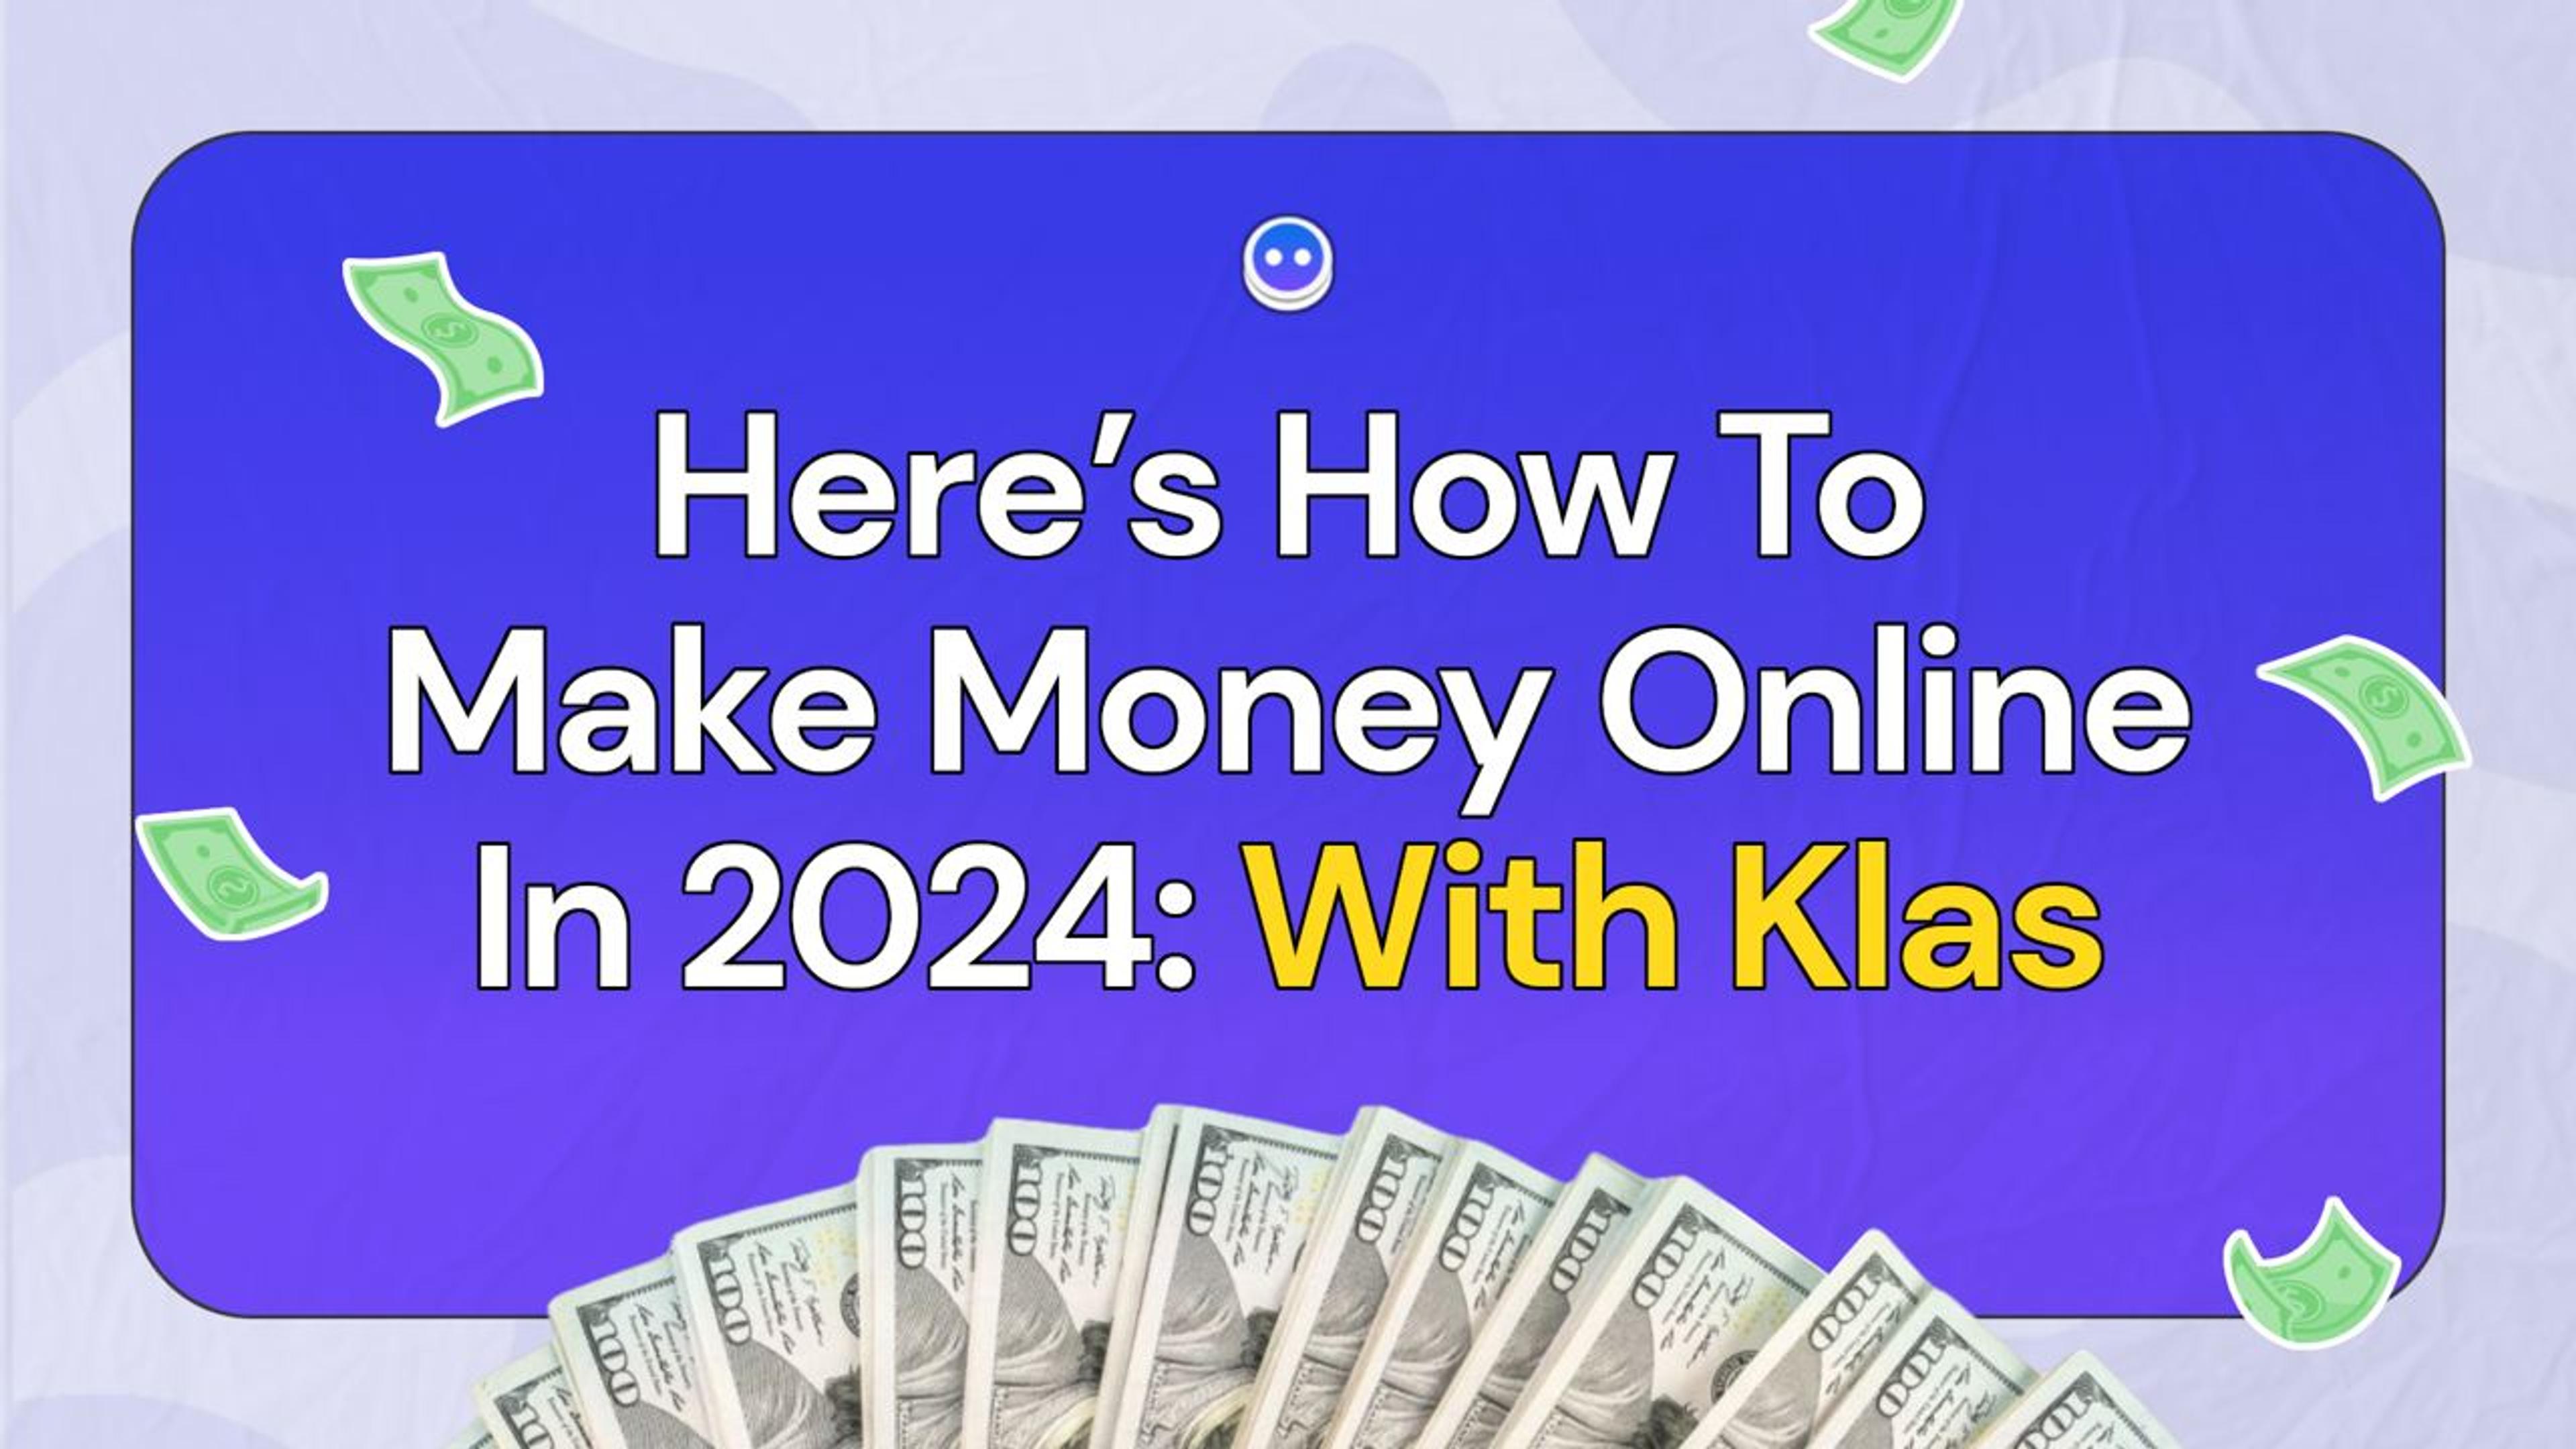 Making money online 